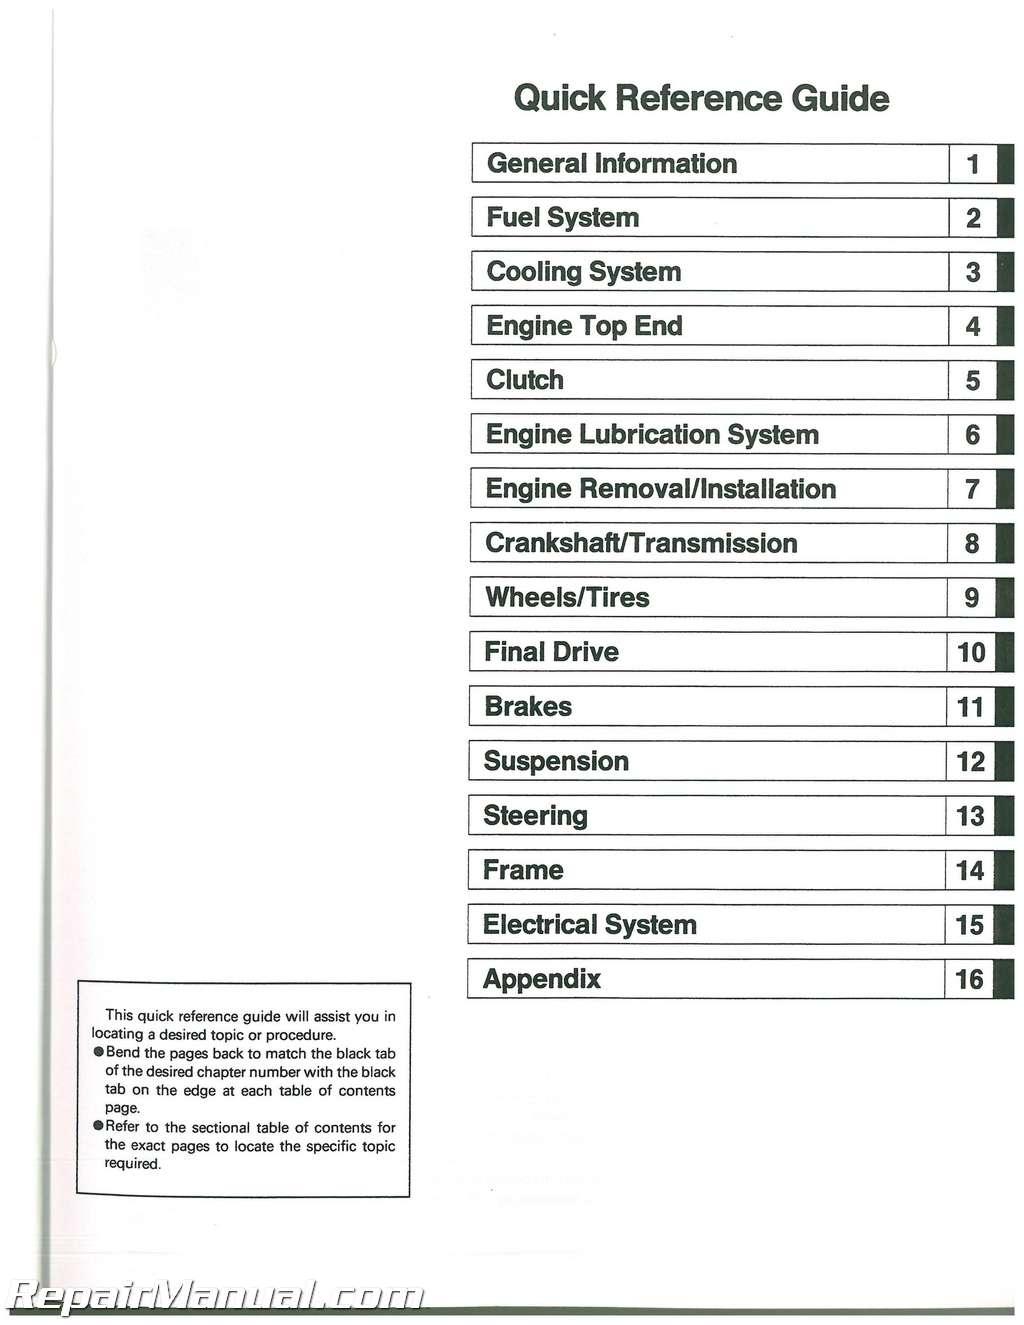 Kawasaki ZL600B Service Manual Supplement